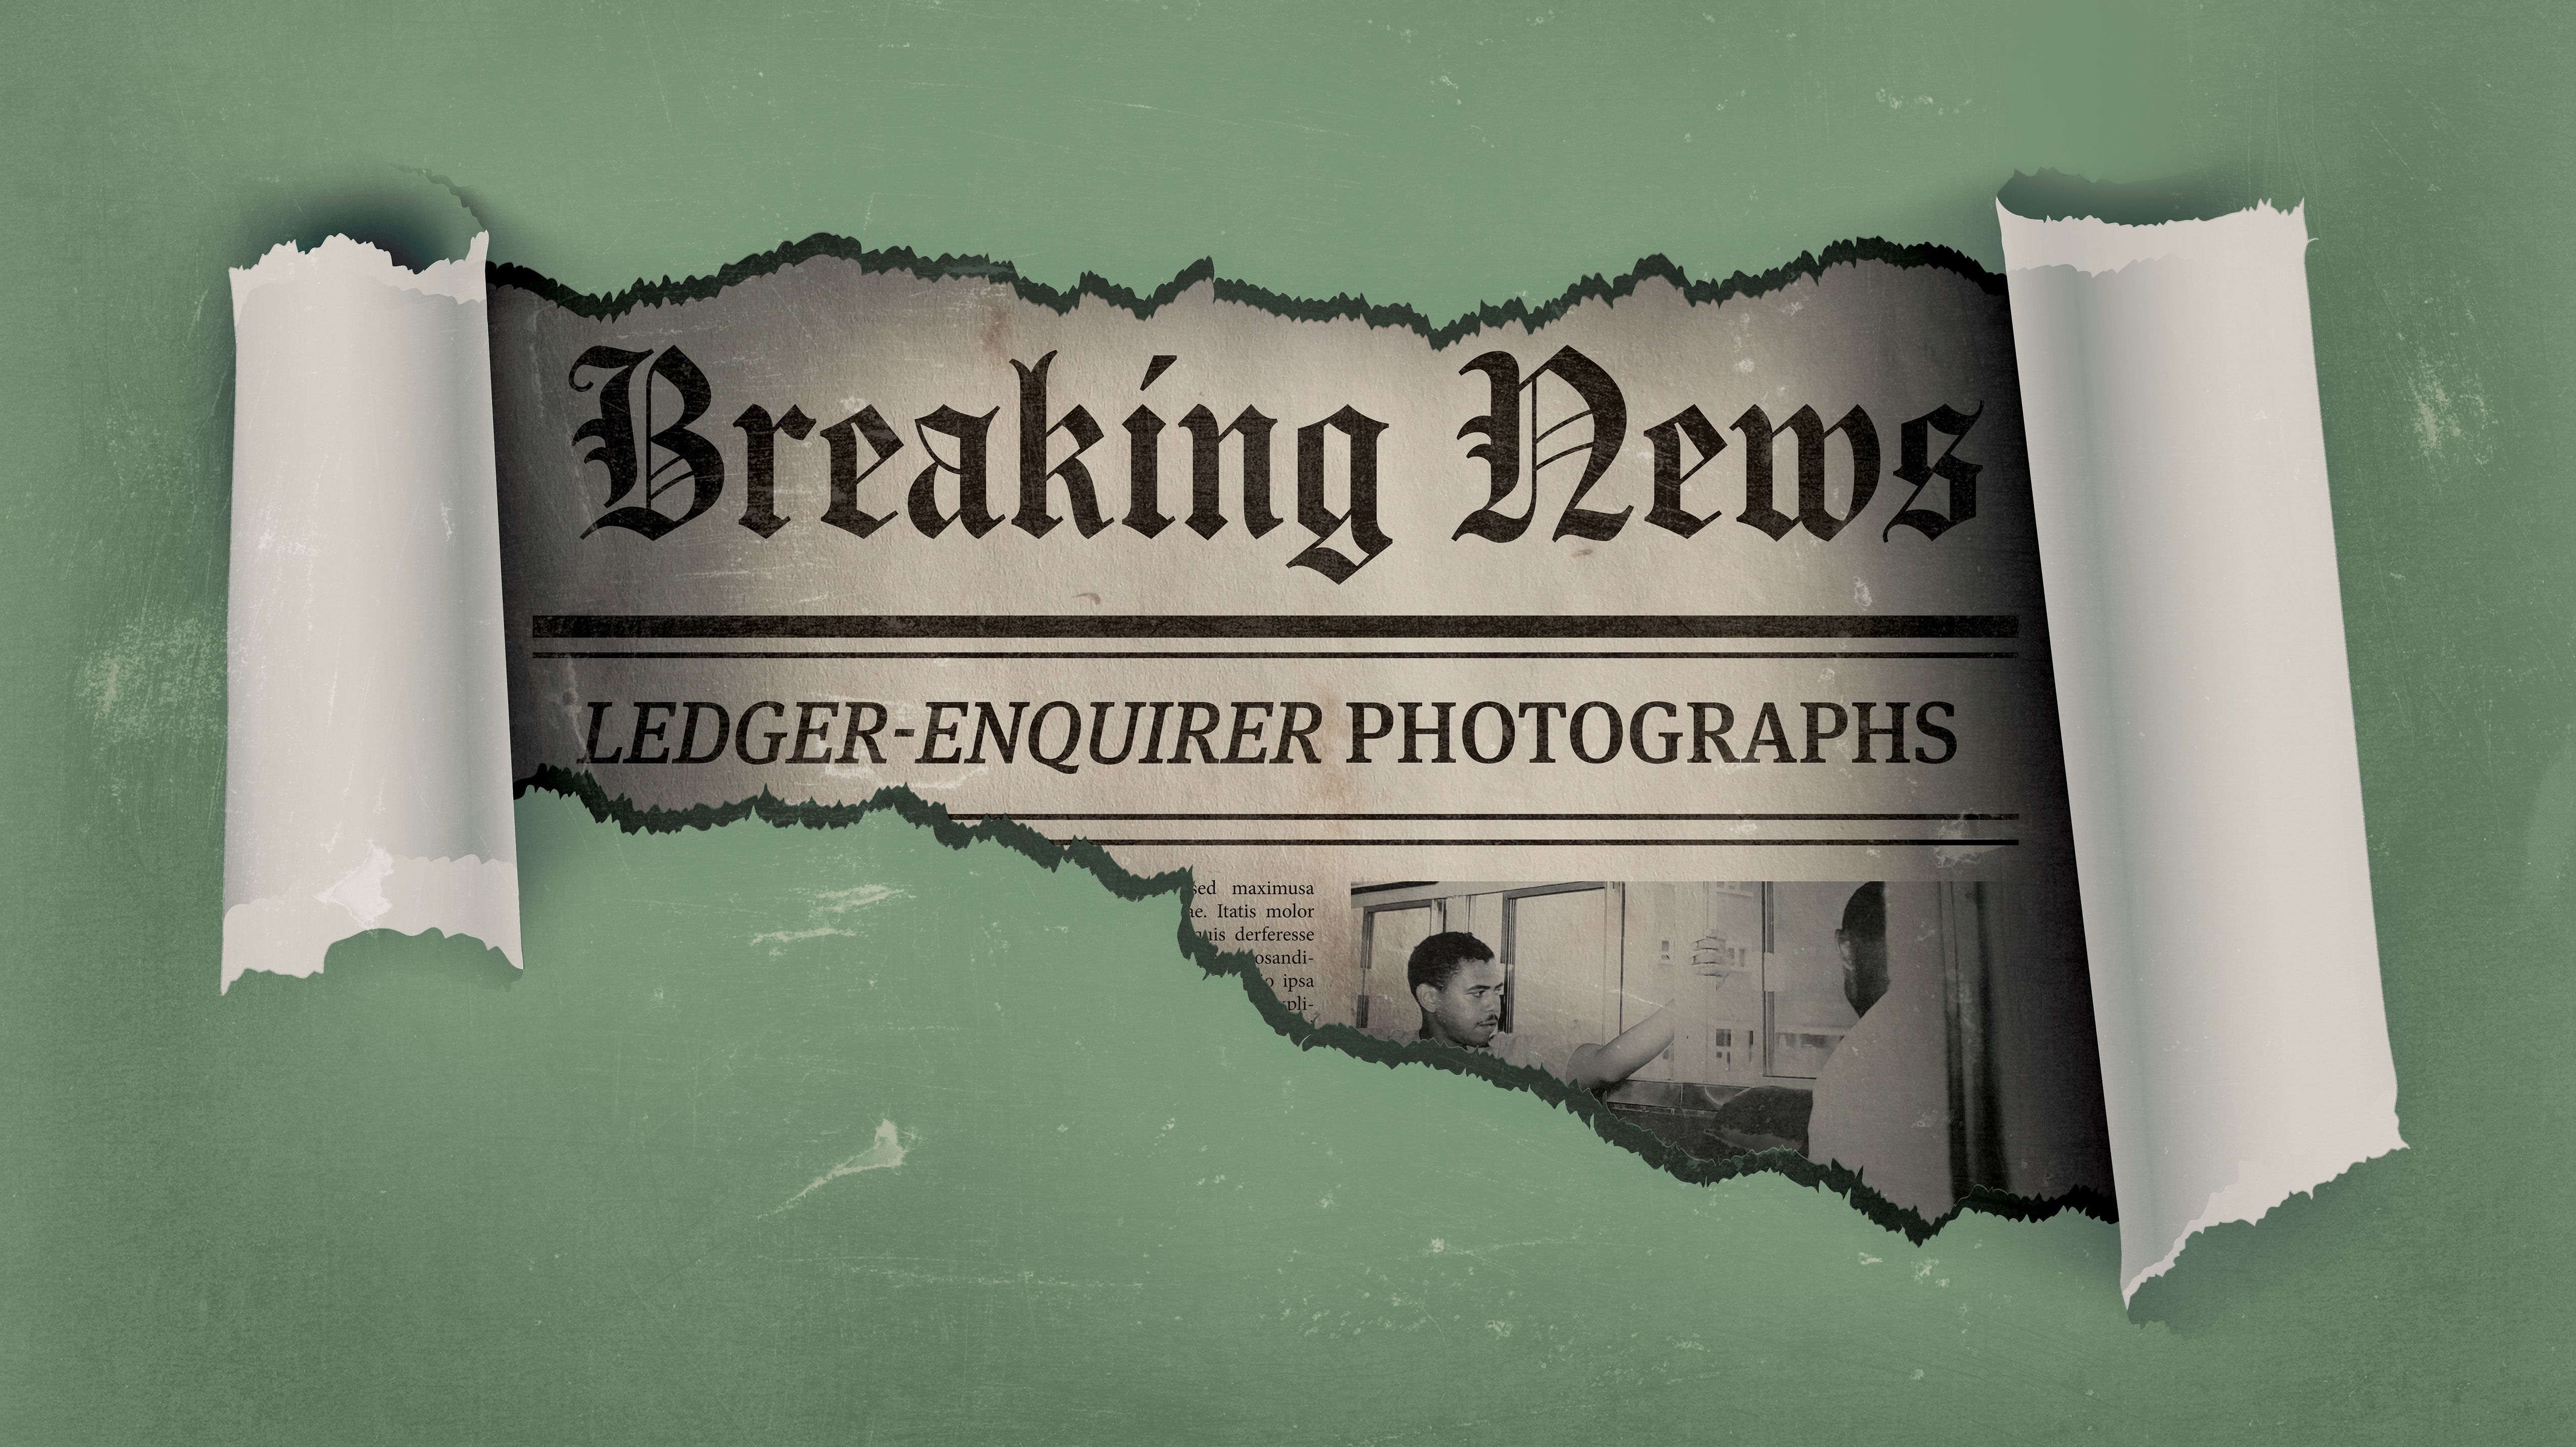 Breaking News: Ledger-Enquirer Photographs